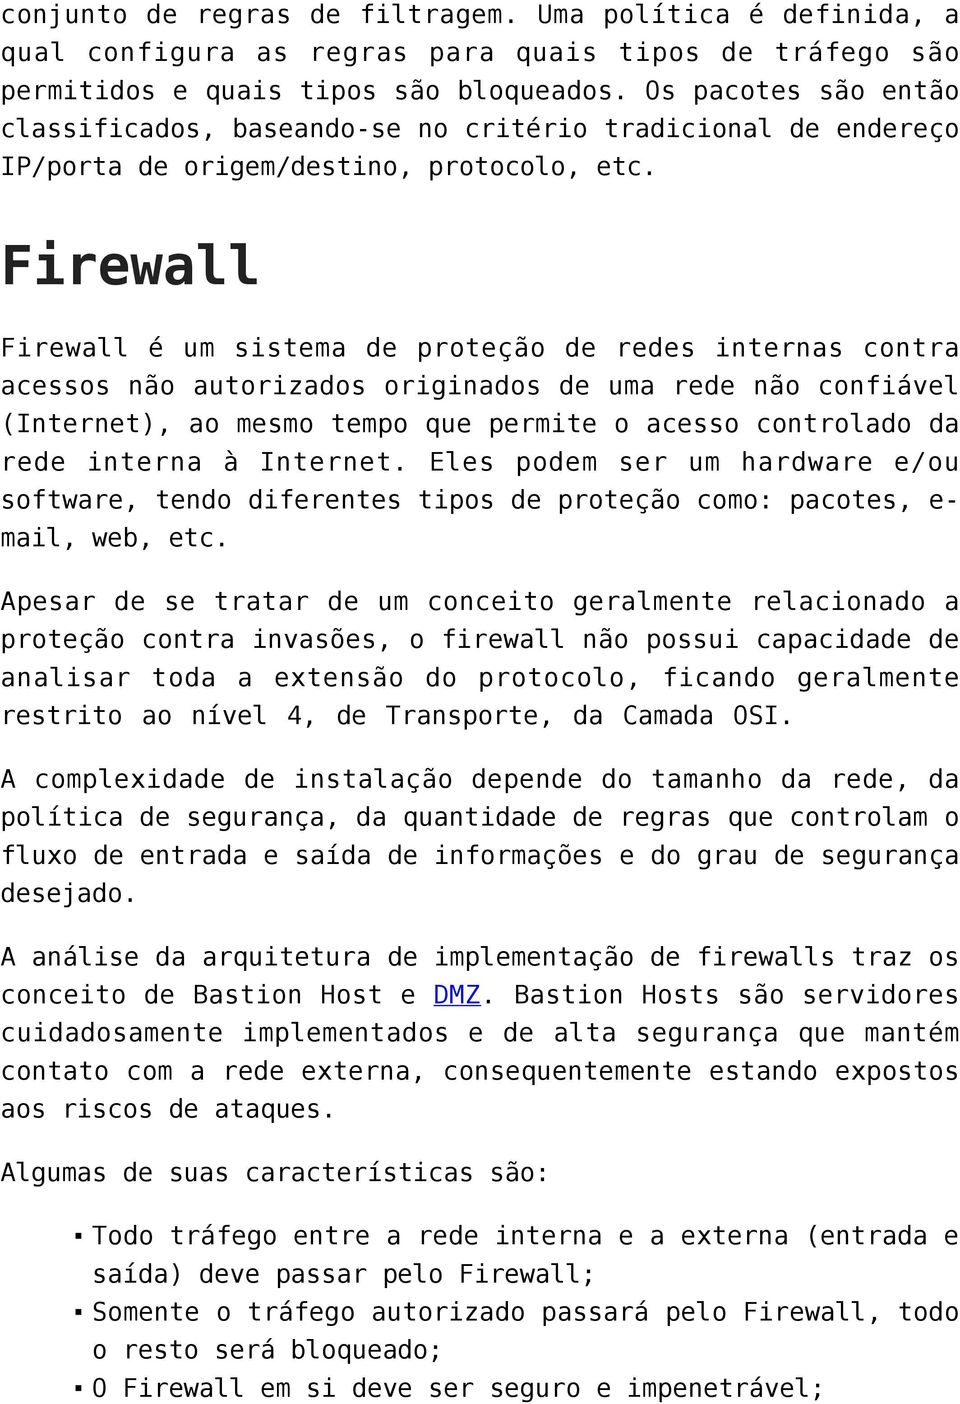 Firewall Firewall é um sistema de proteção de redes internas contra acessos não autorizados originados de uma rede não confiável (Internet), ao mesmo tempo que permite o acesso controlado da rede